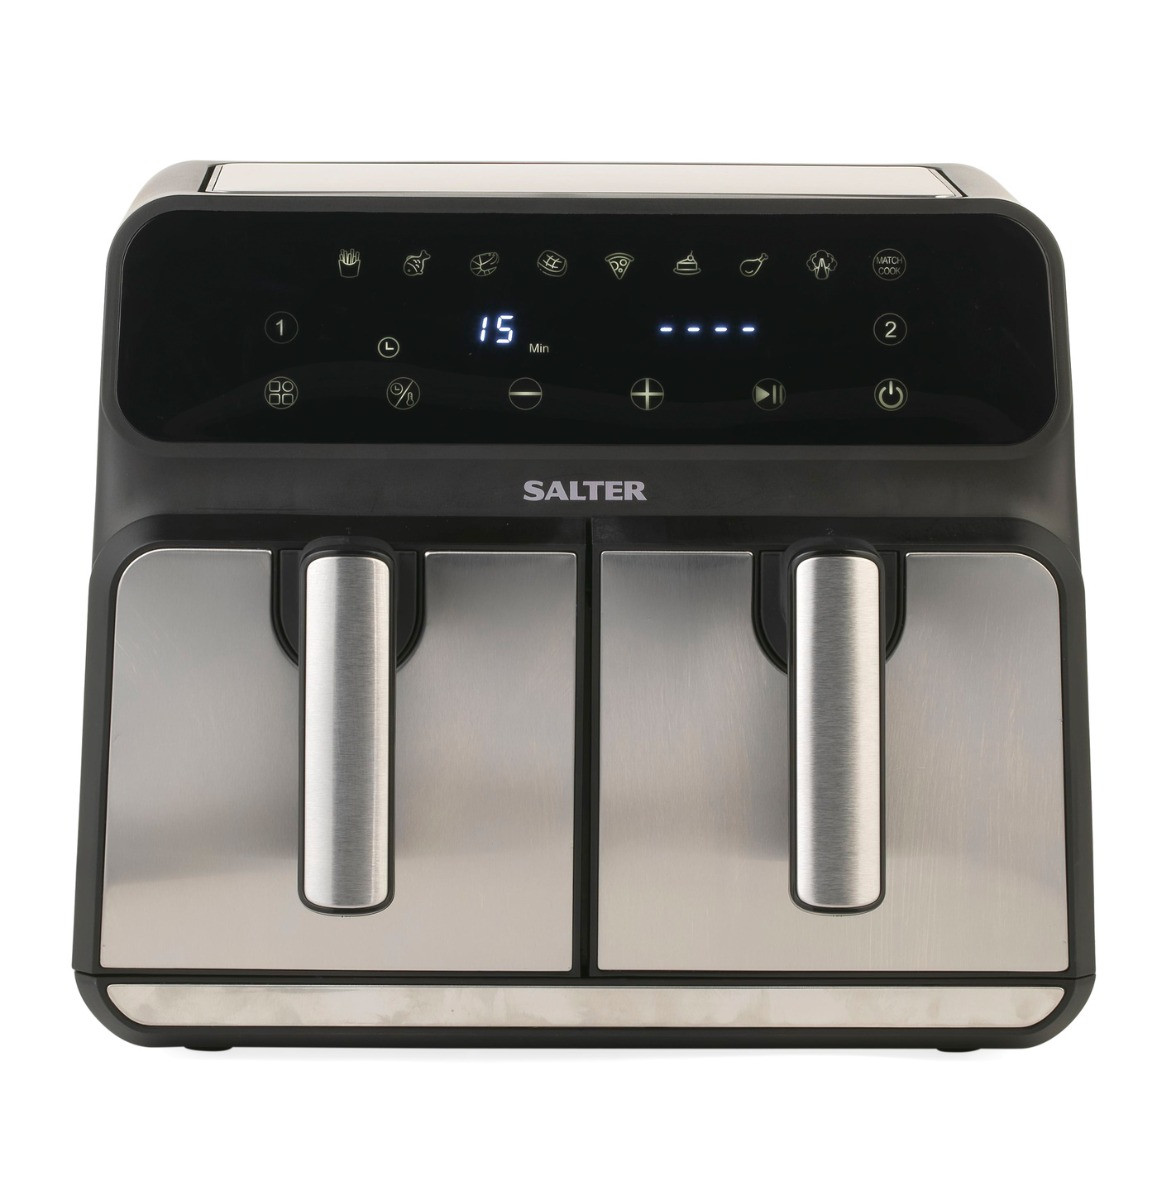 Salter Dual Air Fryer EK5196, Black/Silver - 7.6L>